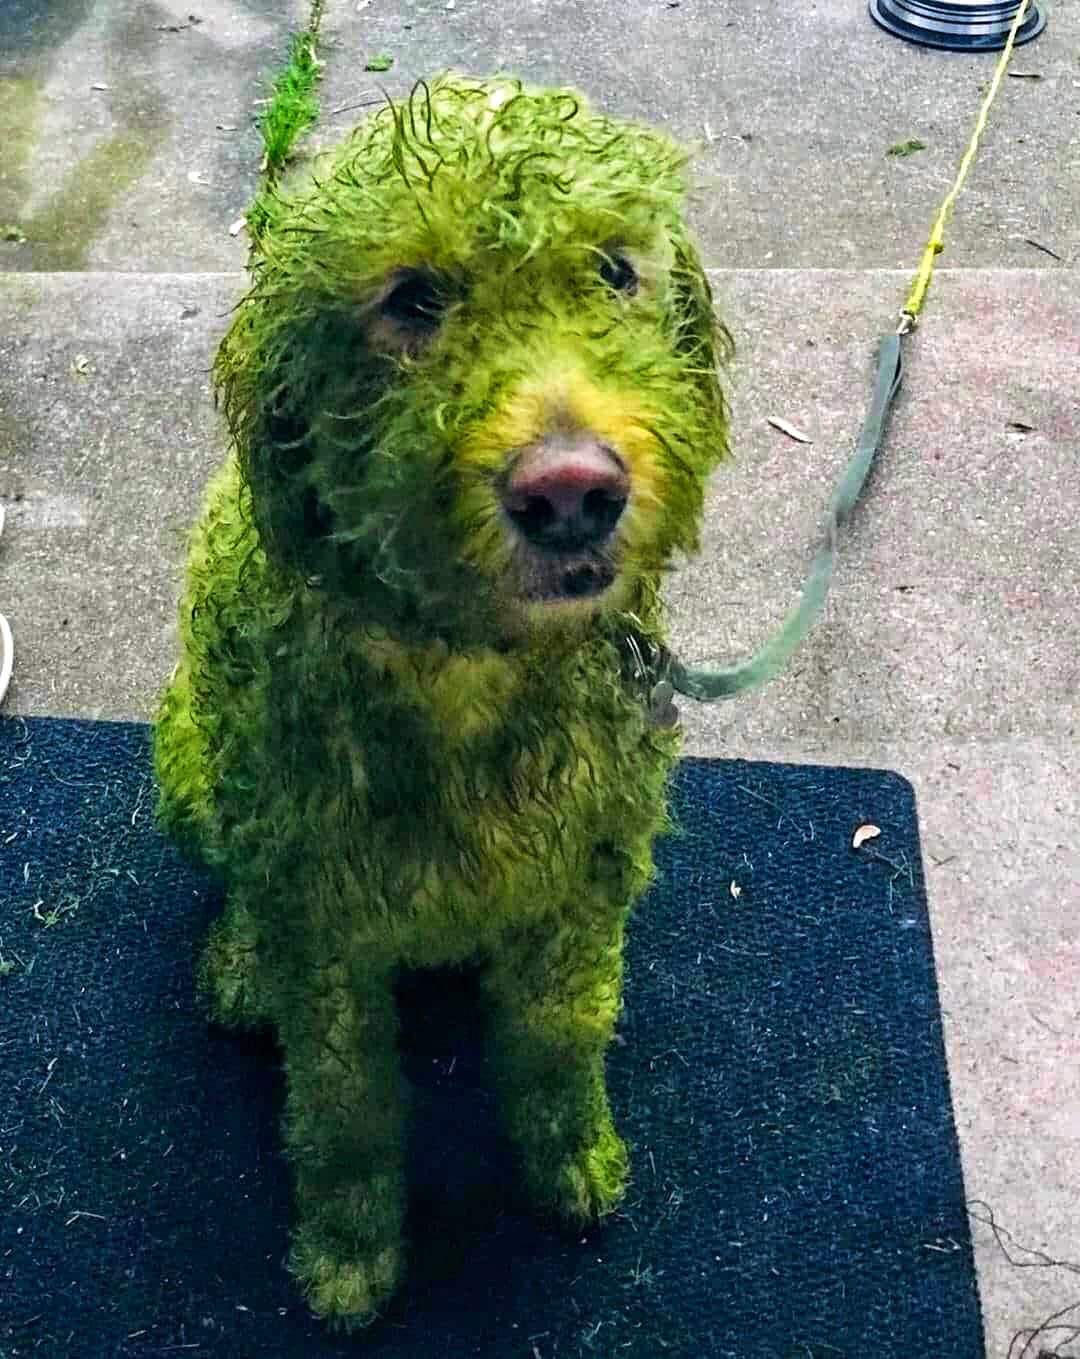 Мужчина выпустил мокрого пса гулять и невольно изобрел новый способ покраски животных. ФОТО